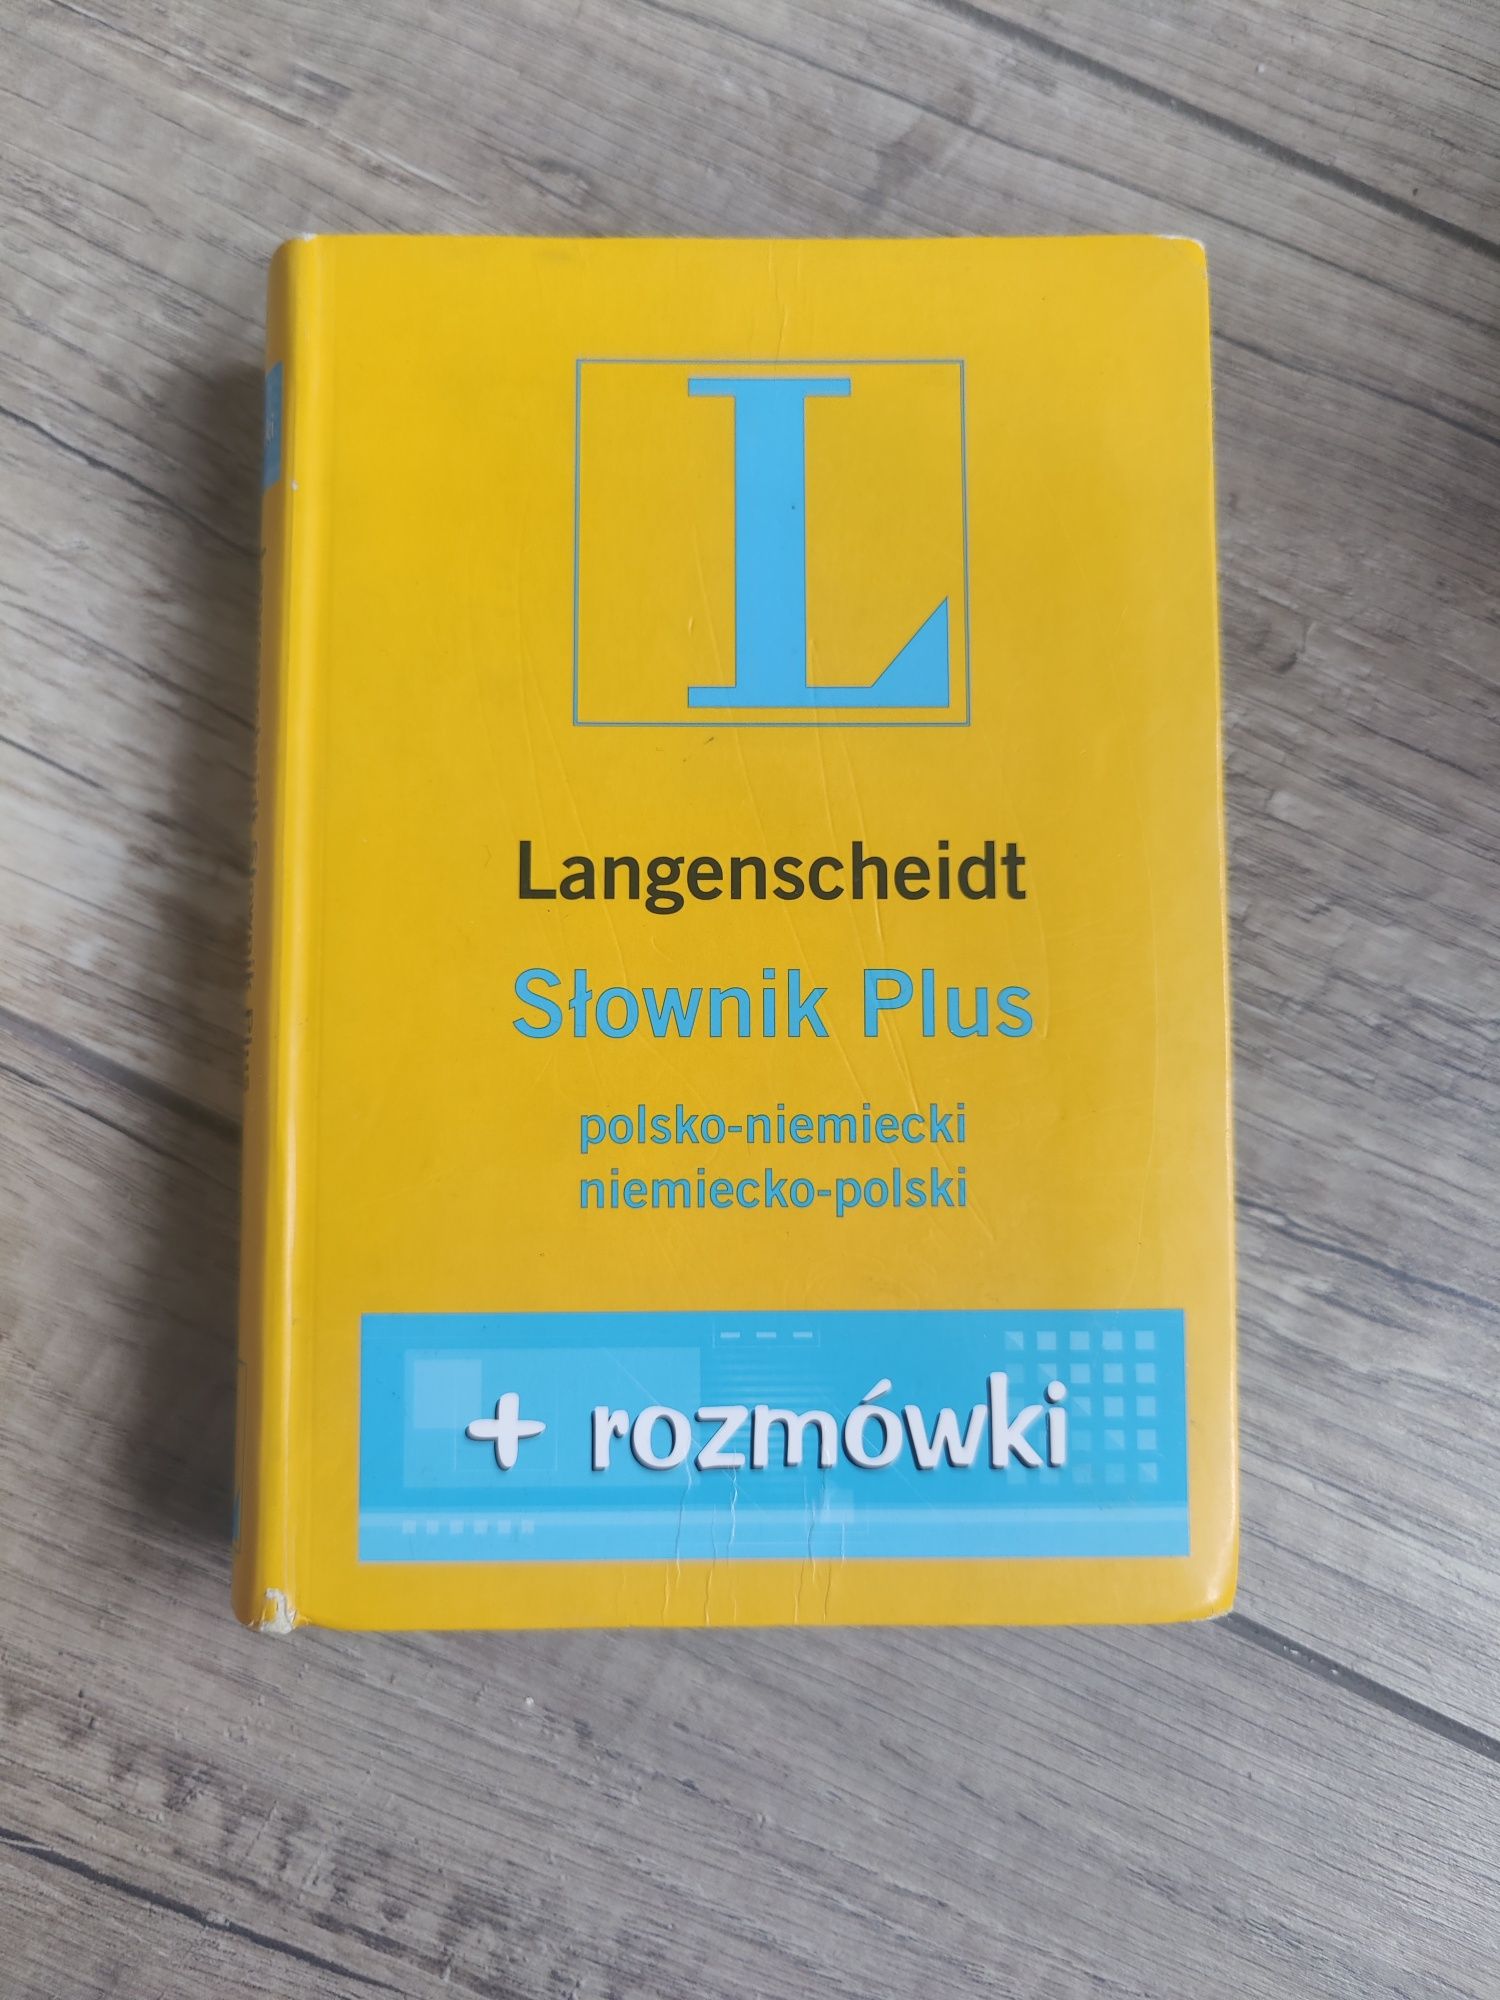 Langenscheidt, Słownik Plus, polsko-niemiecki, niemiecko-polski